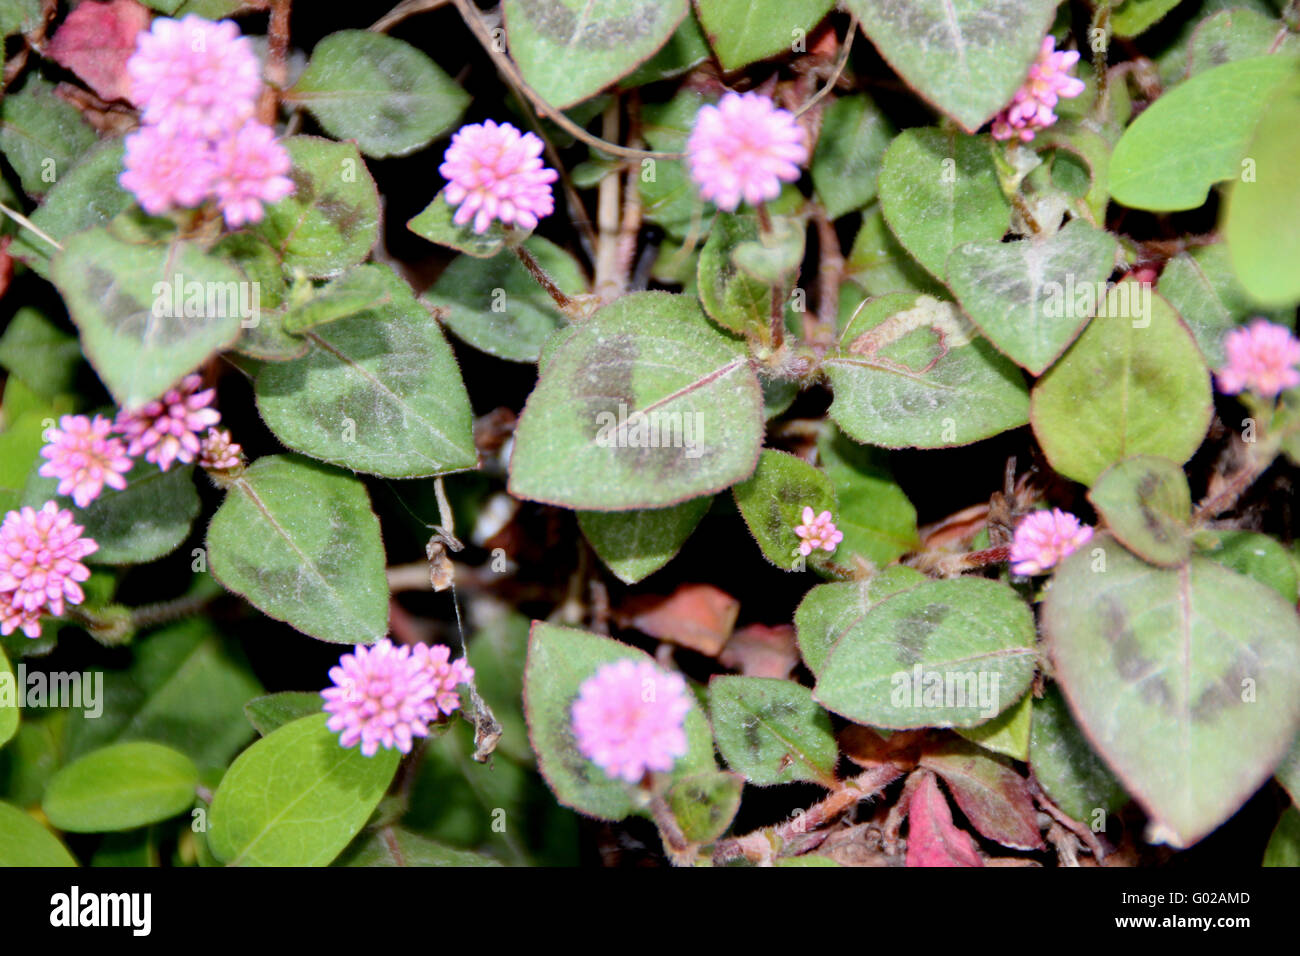 Persicaria capitata, famille Polygonaceae, herbe vivace rampante à feuilles ovales avec deux taches pourpres et des fleurs roses Banque D'Images